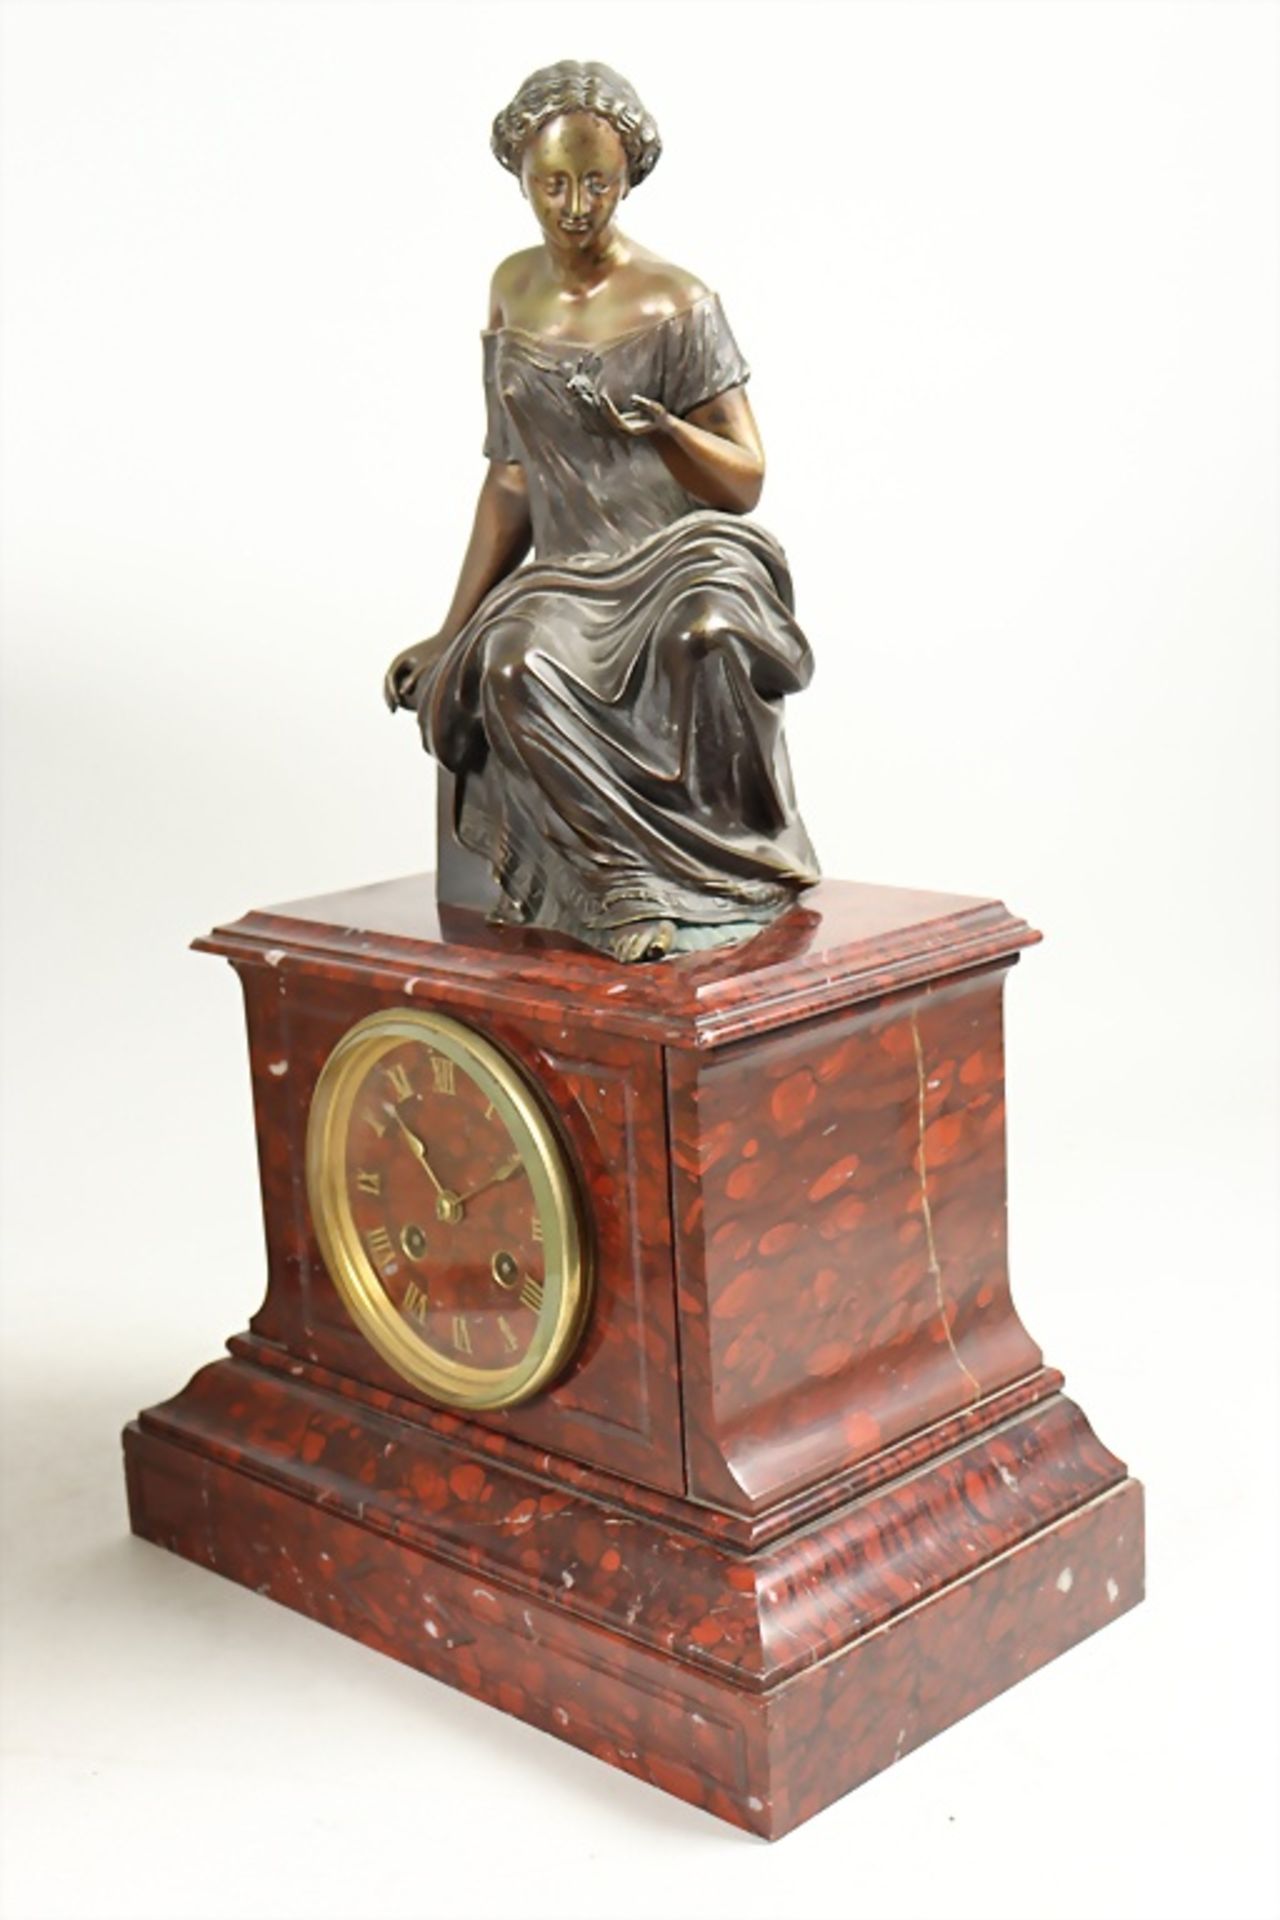 Kaminuhr mit Bronze Skulptur / A mantel clock with bronze statue, Frankreich, 19. Jh. - Image 5 of 8